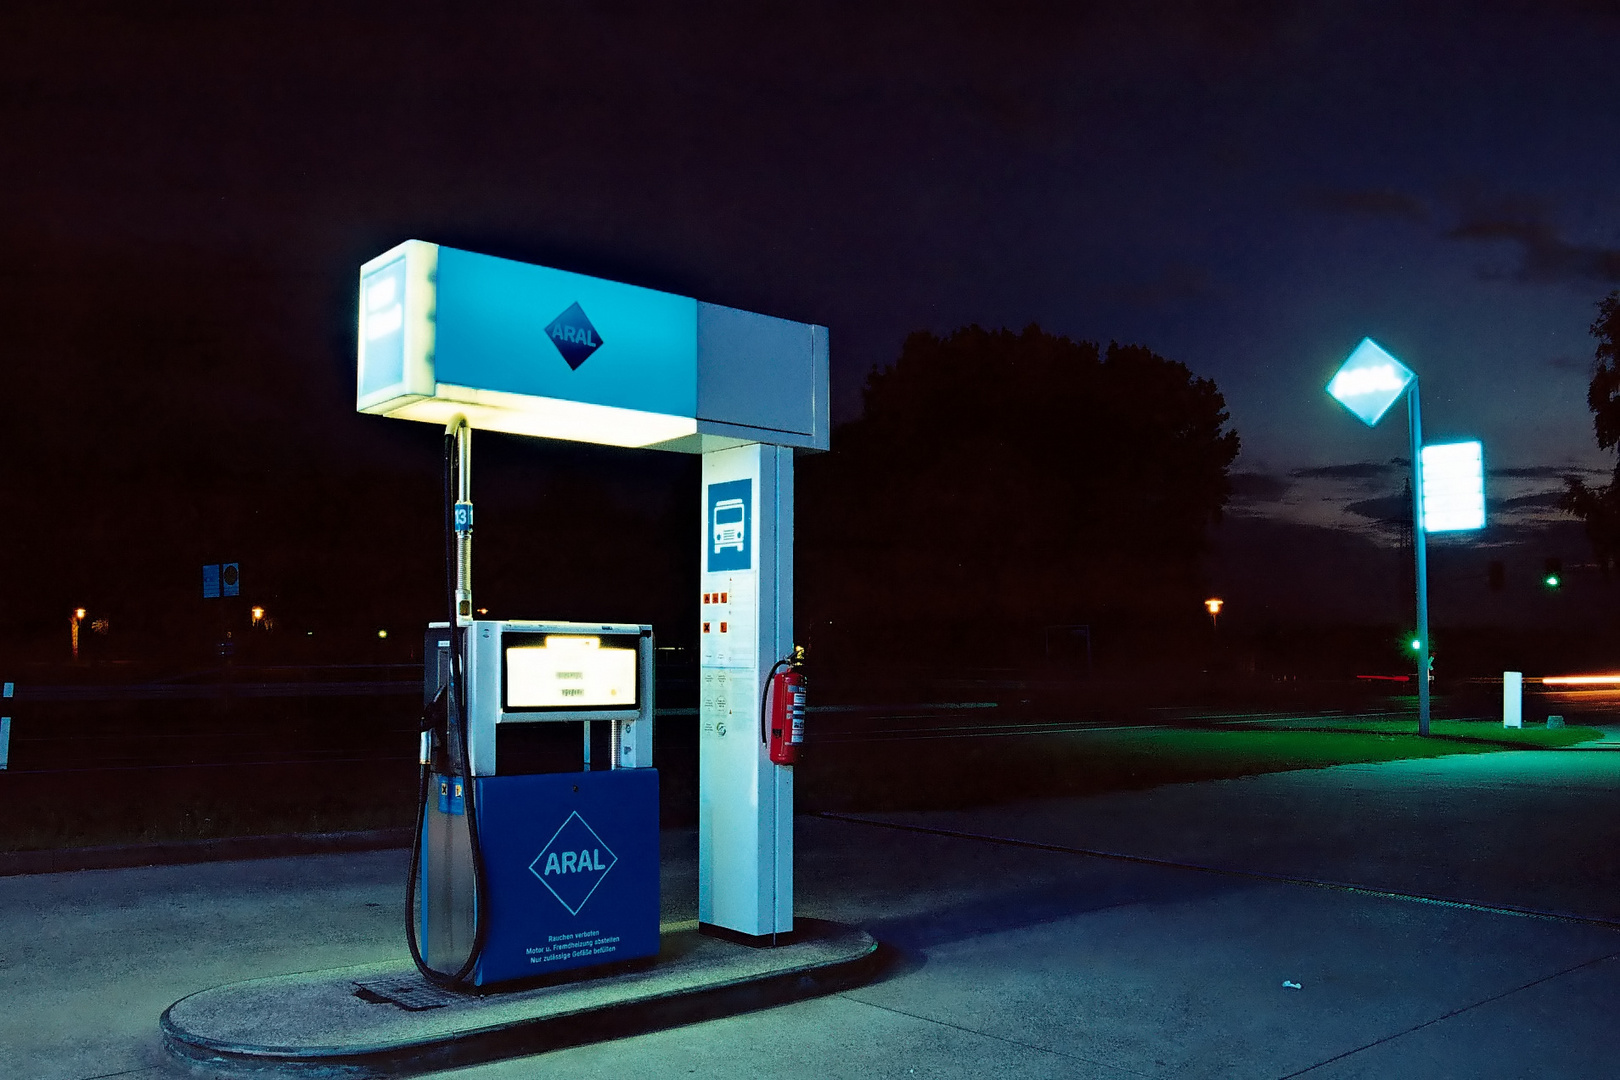 [Gasoline Station 2]